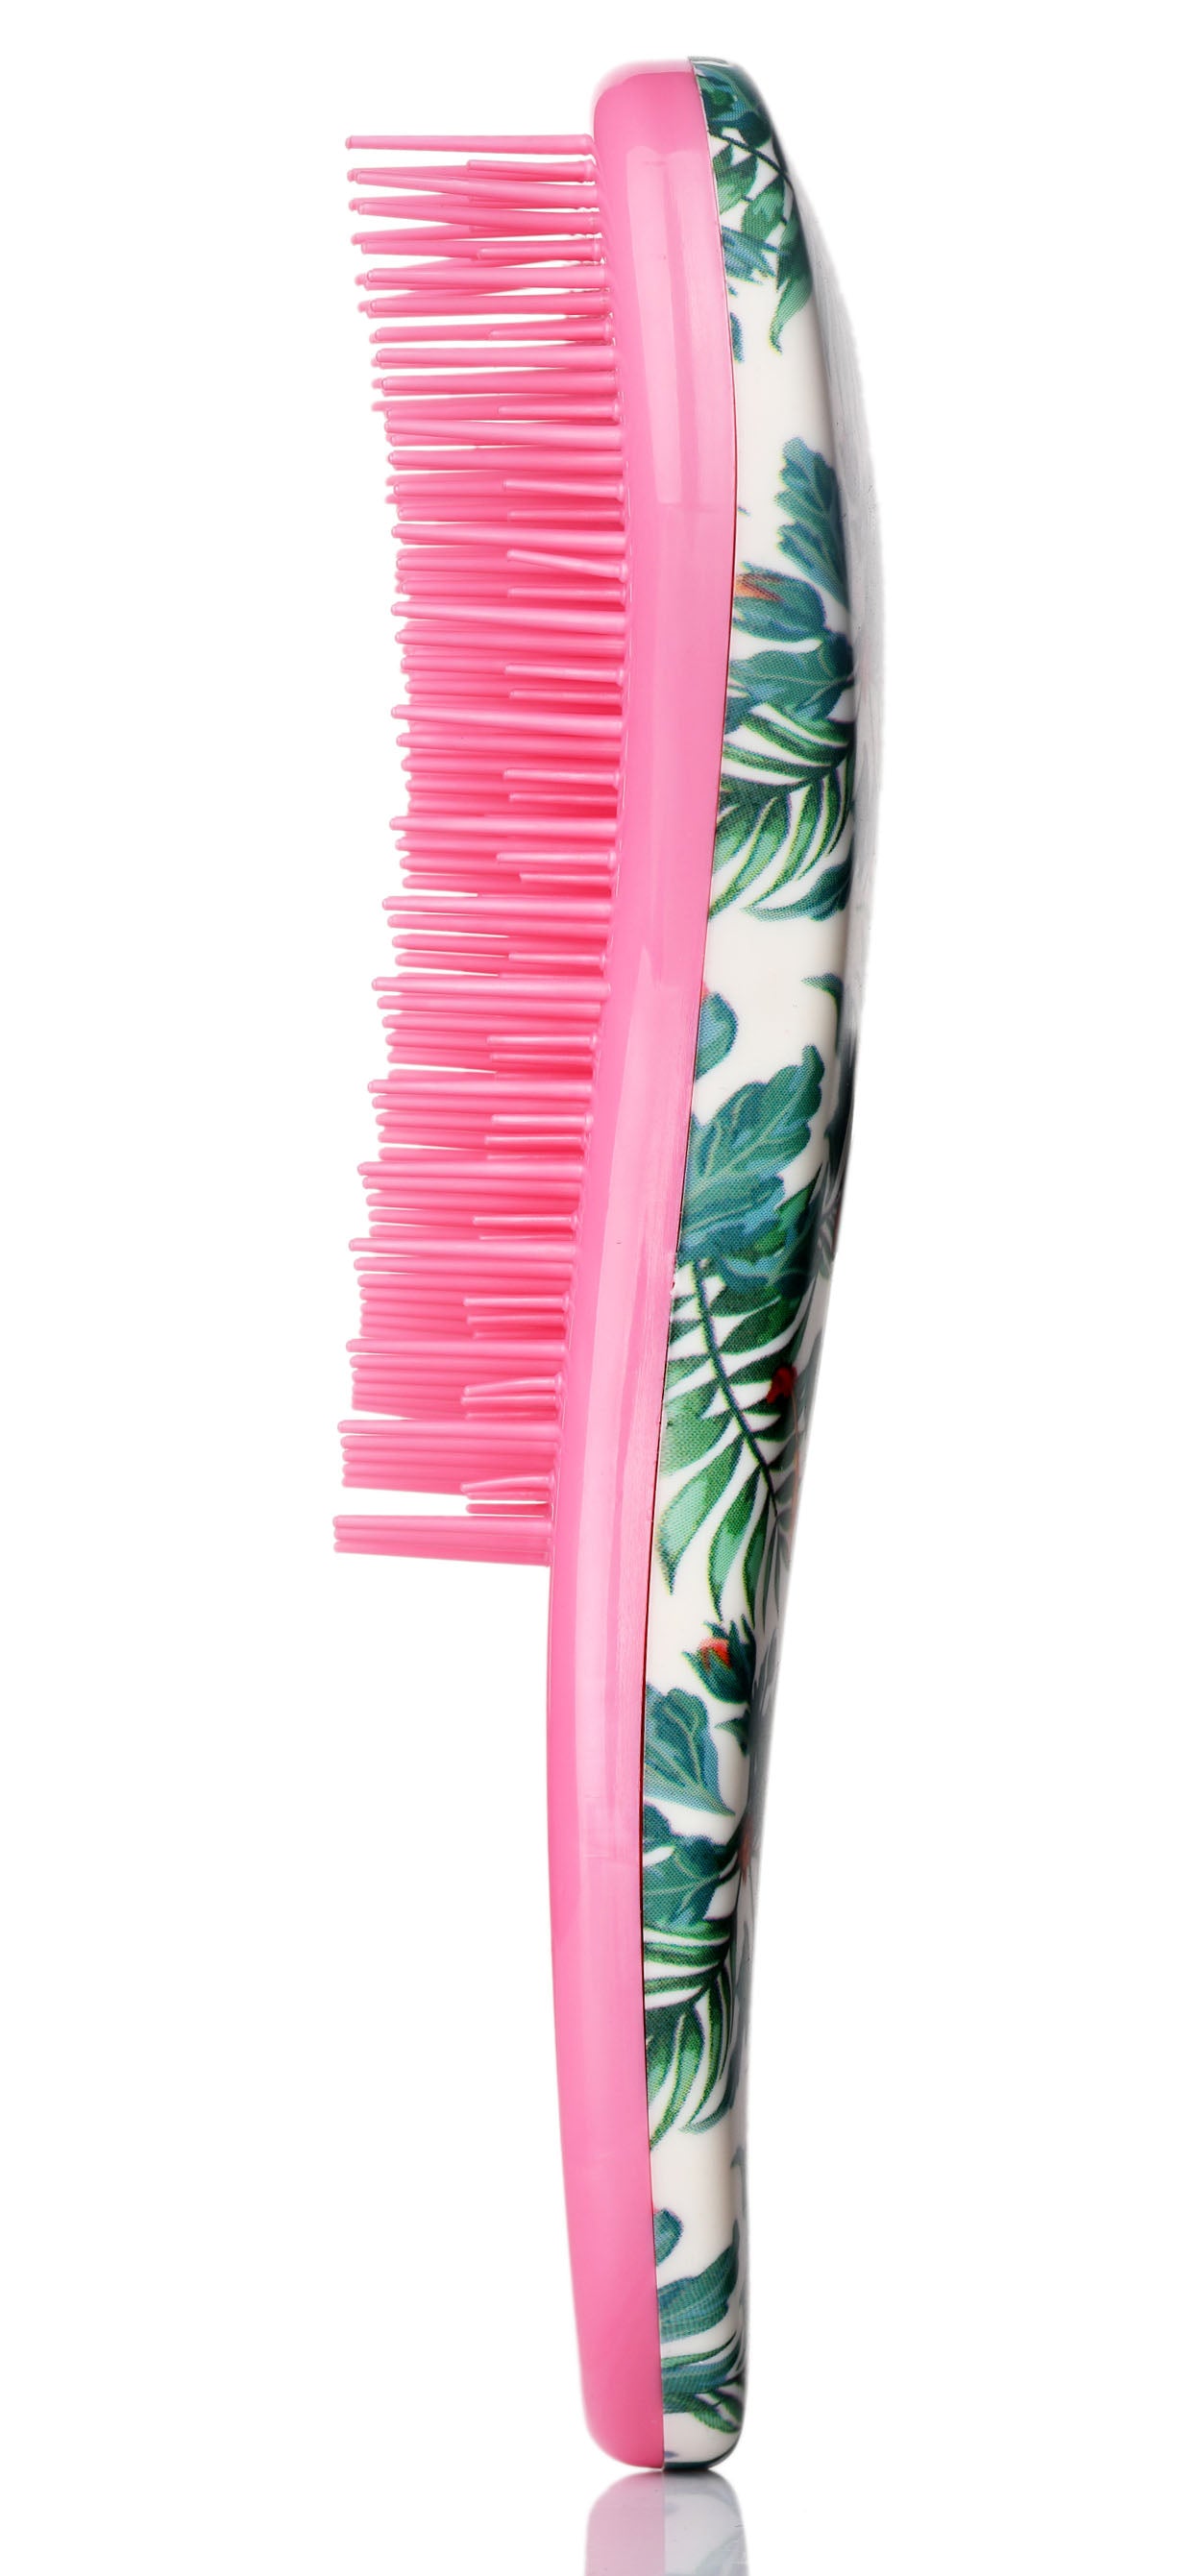 Detangler Wet Hair Brush  Mini Detangling Hairbrush for Curly Thick Natural Straight Fine Wet Dry Hair for Kids Toddlers Girls Pain Free Small (Rainforest)